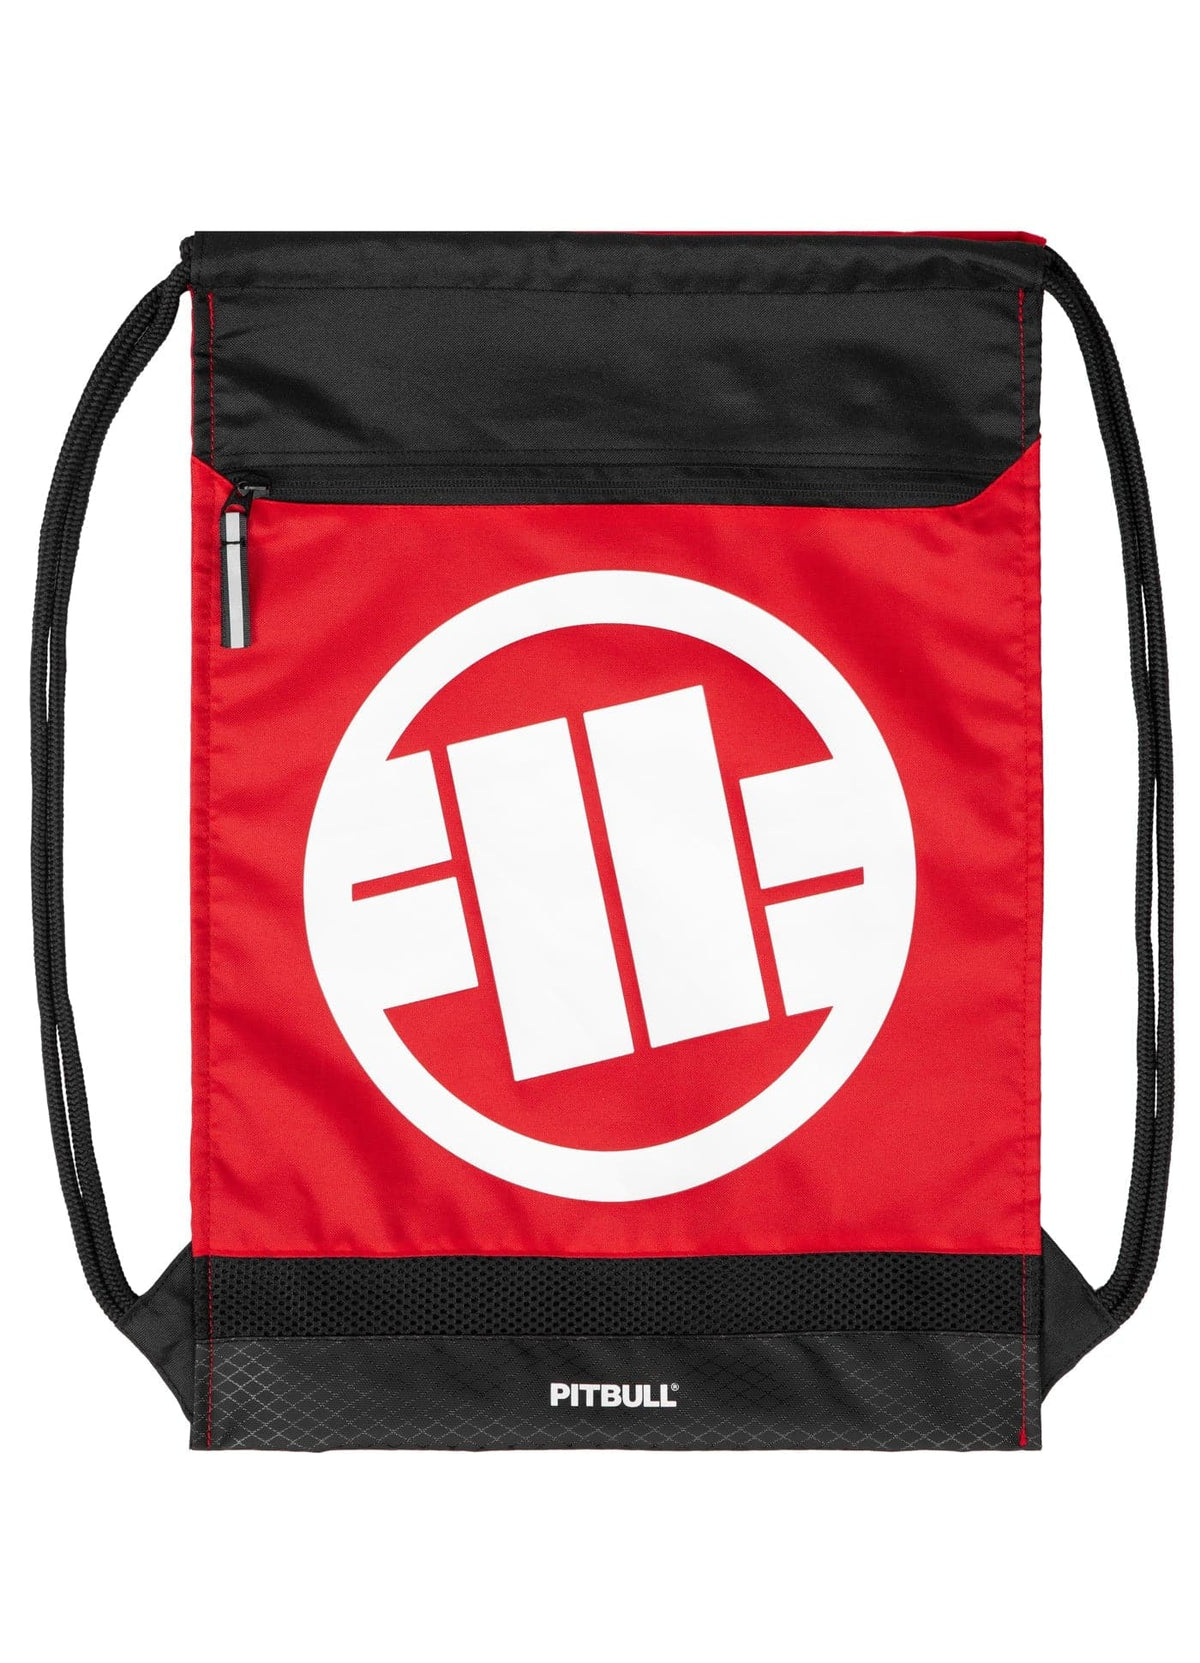 LOGO 2 Red Gym Sack Bag - Pitbullstore.eu